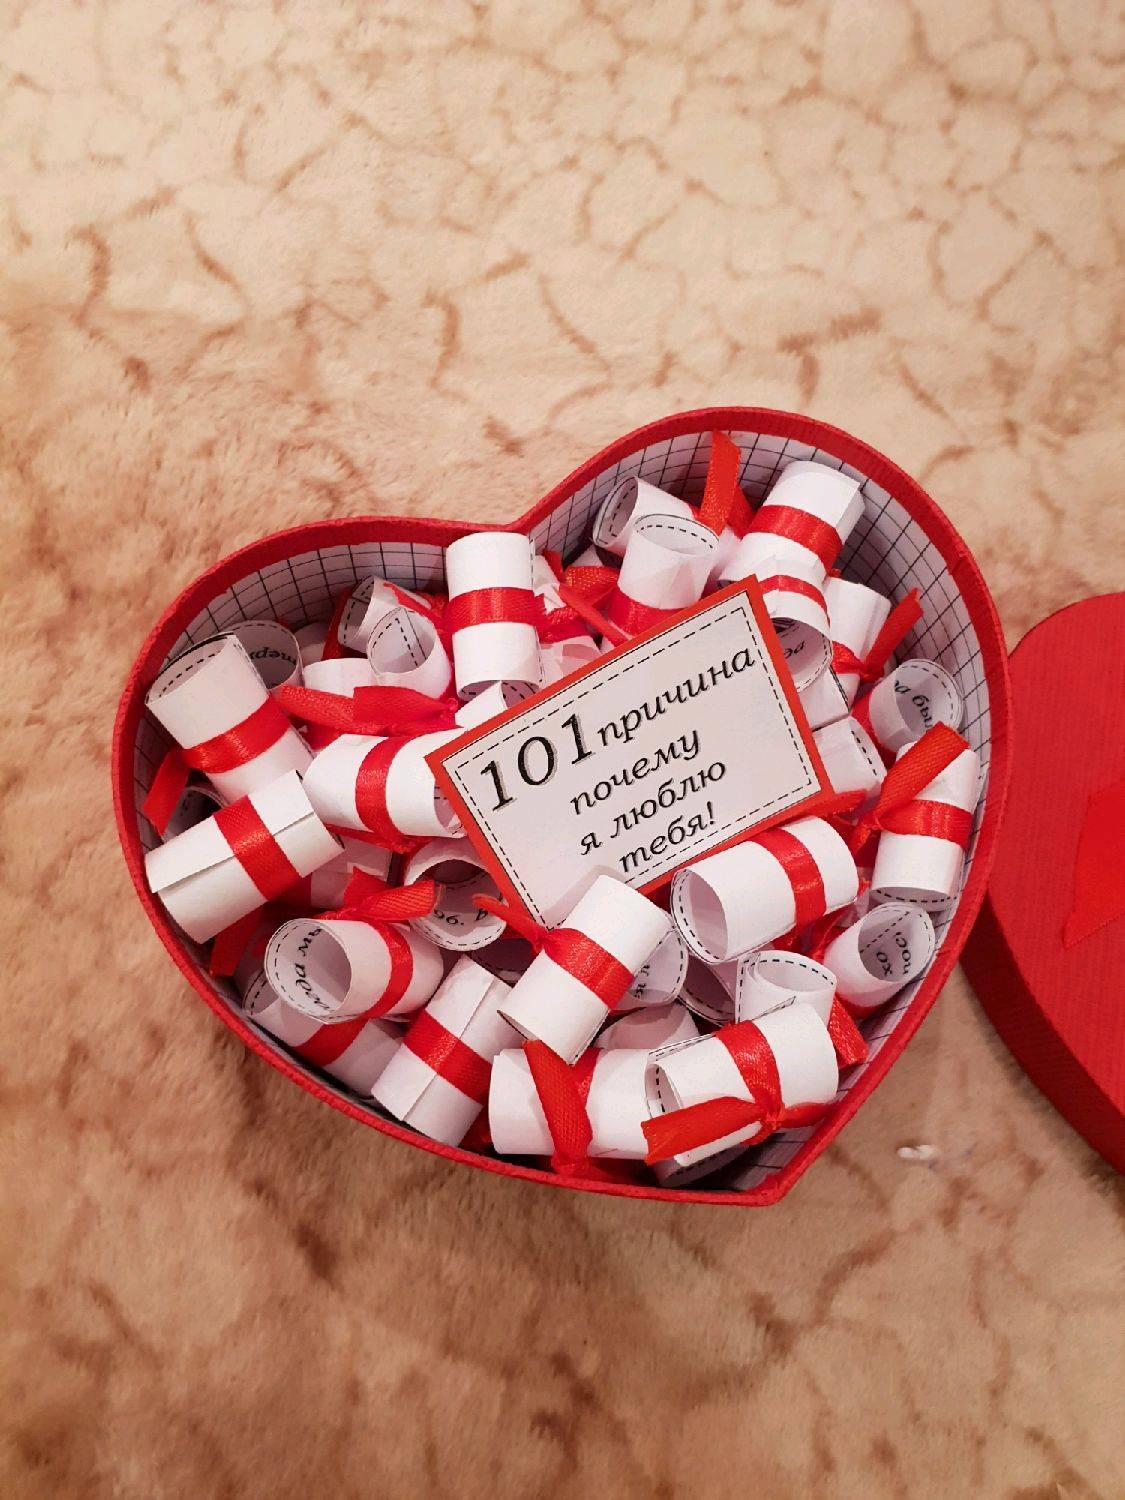 Что подарить мужу своими руками на 14 февраля: оригинальные идеи подарков для любимого мужа на день влюбленных